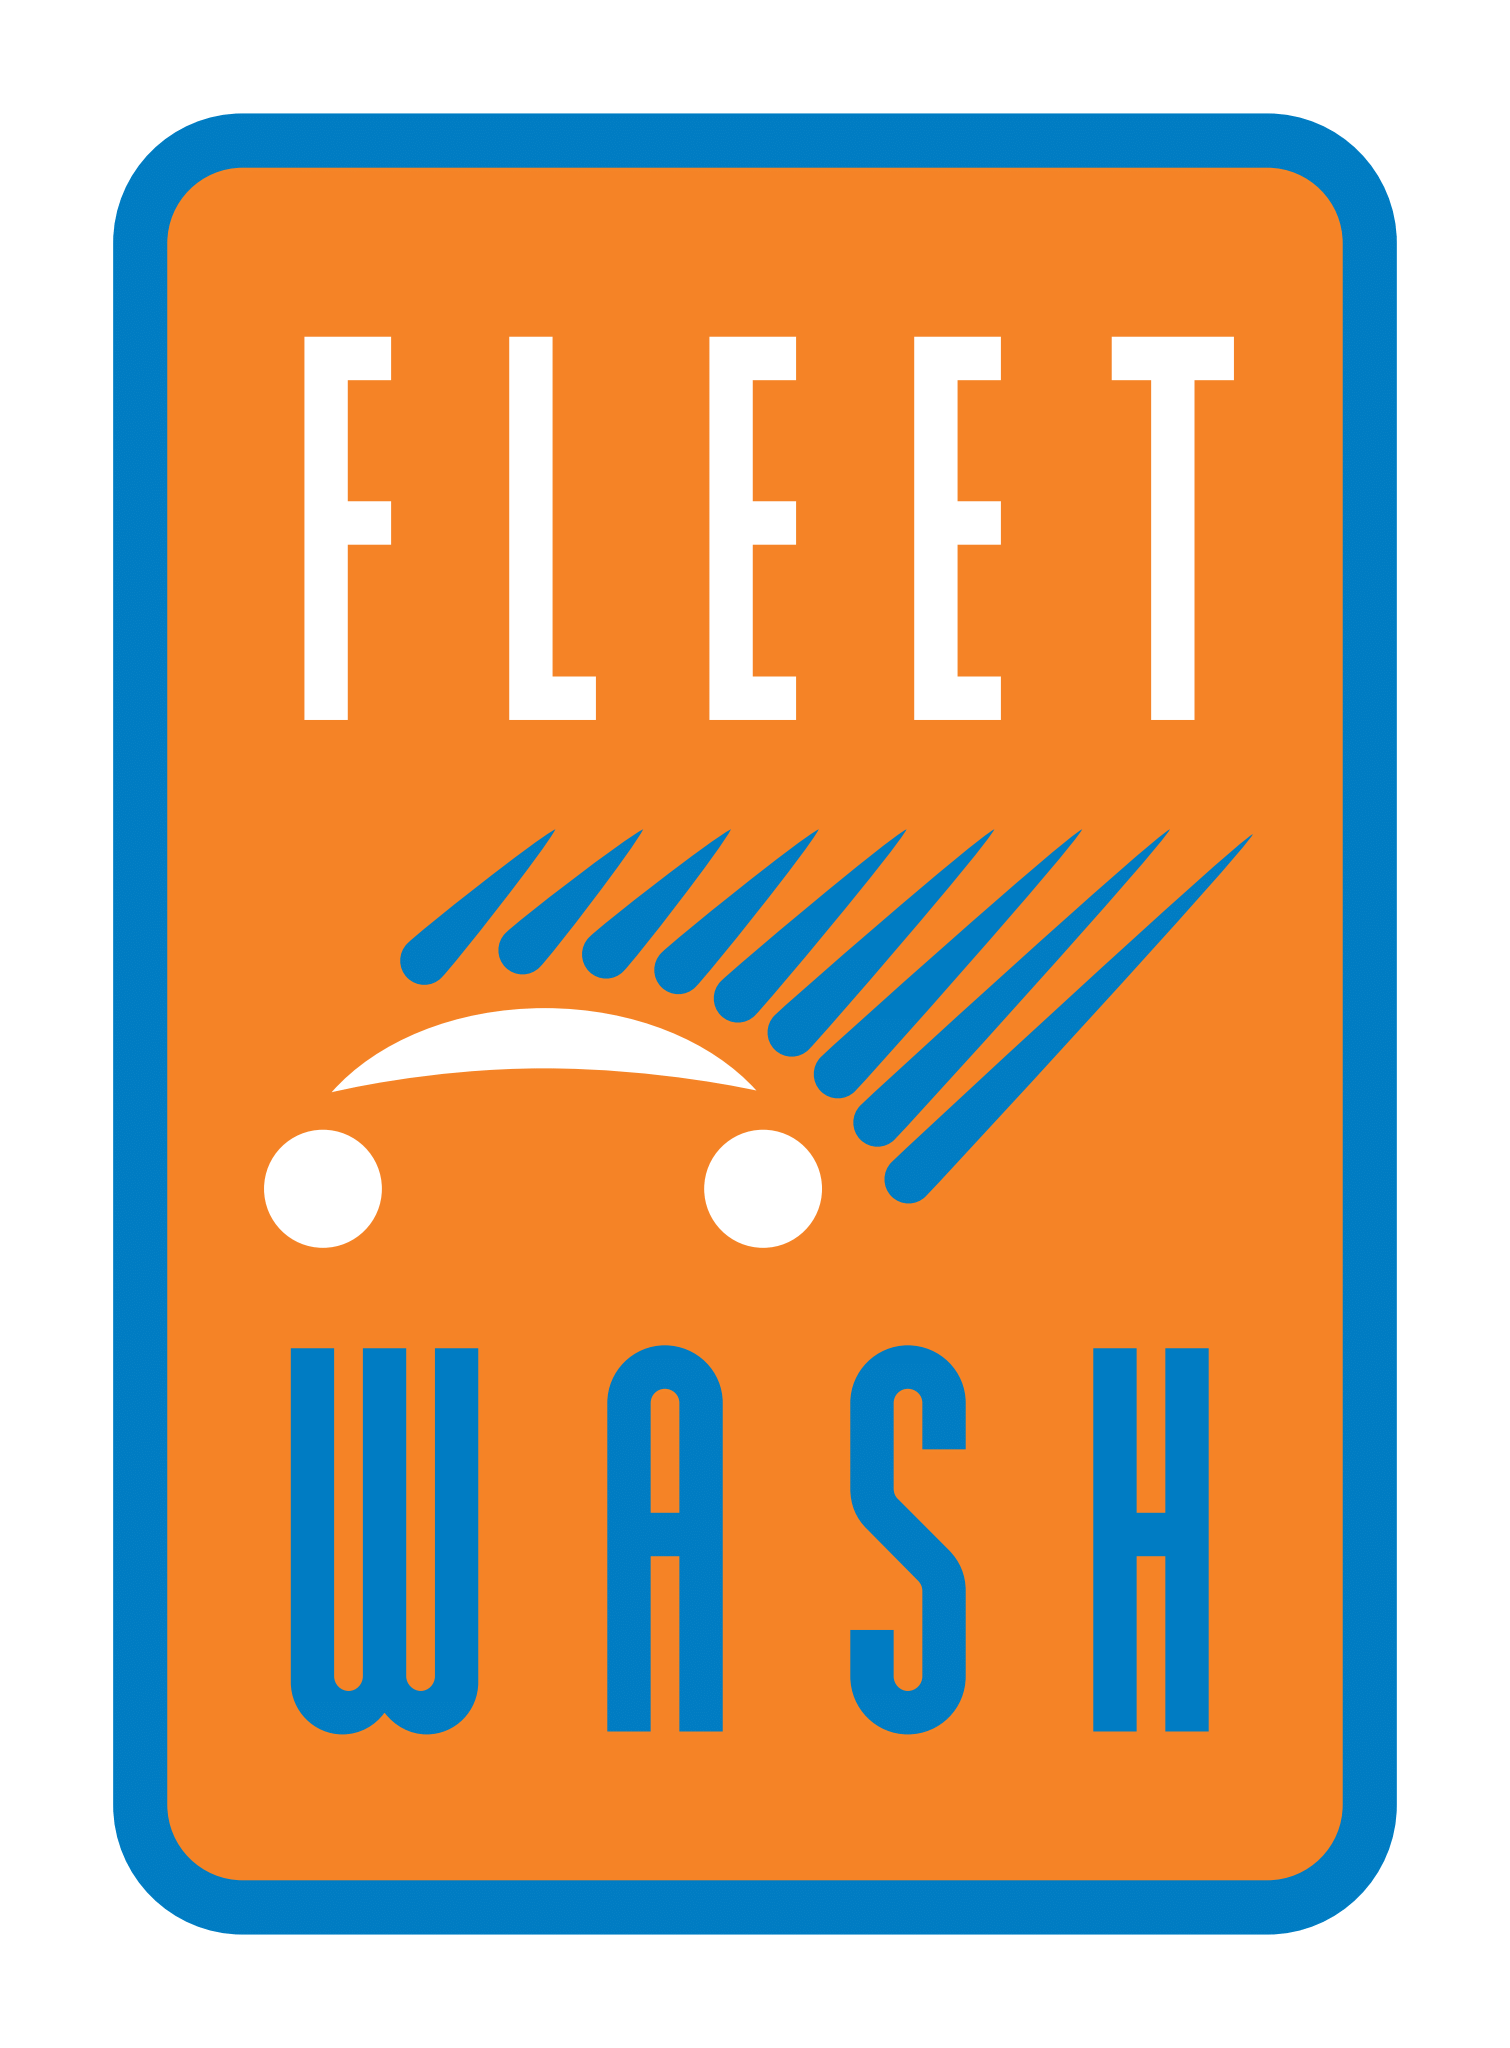 Fleet-Wash